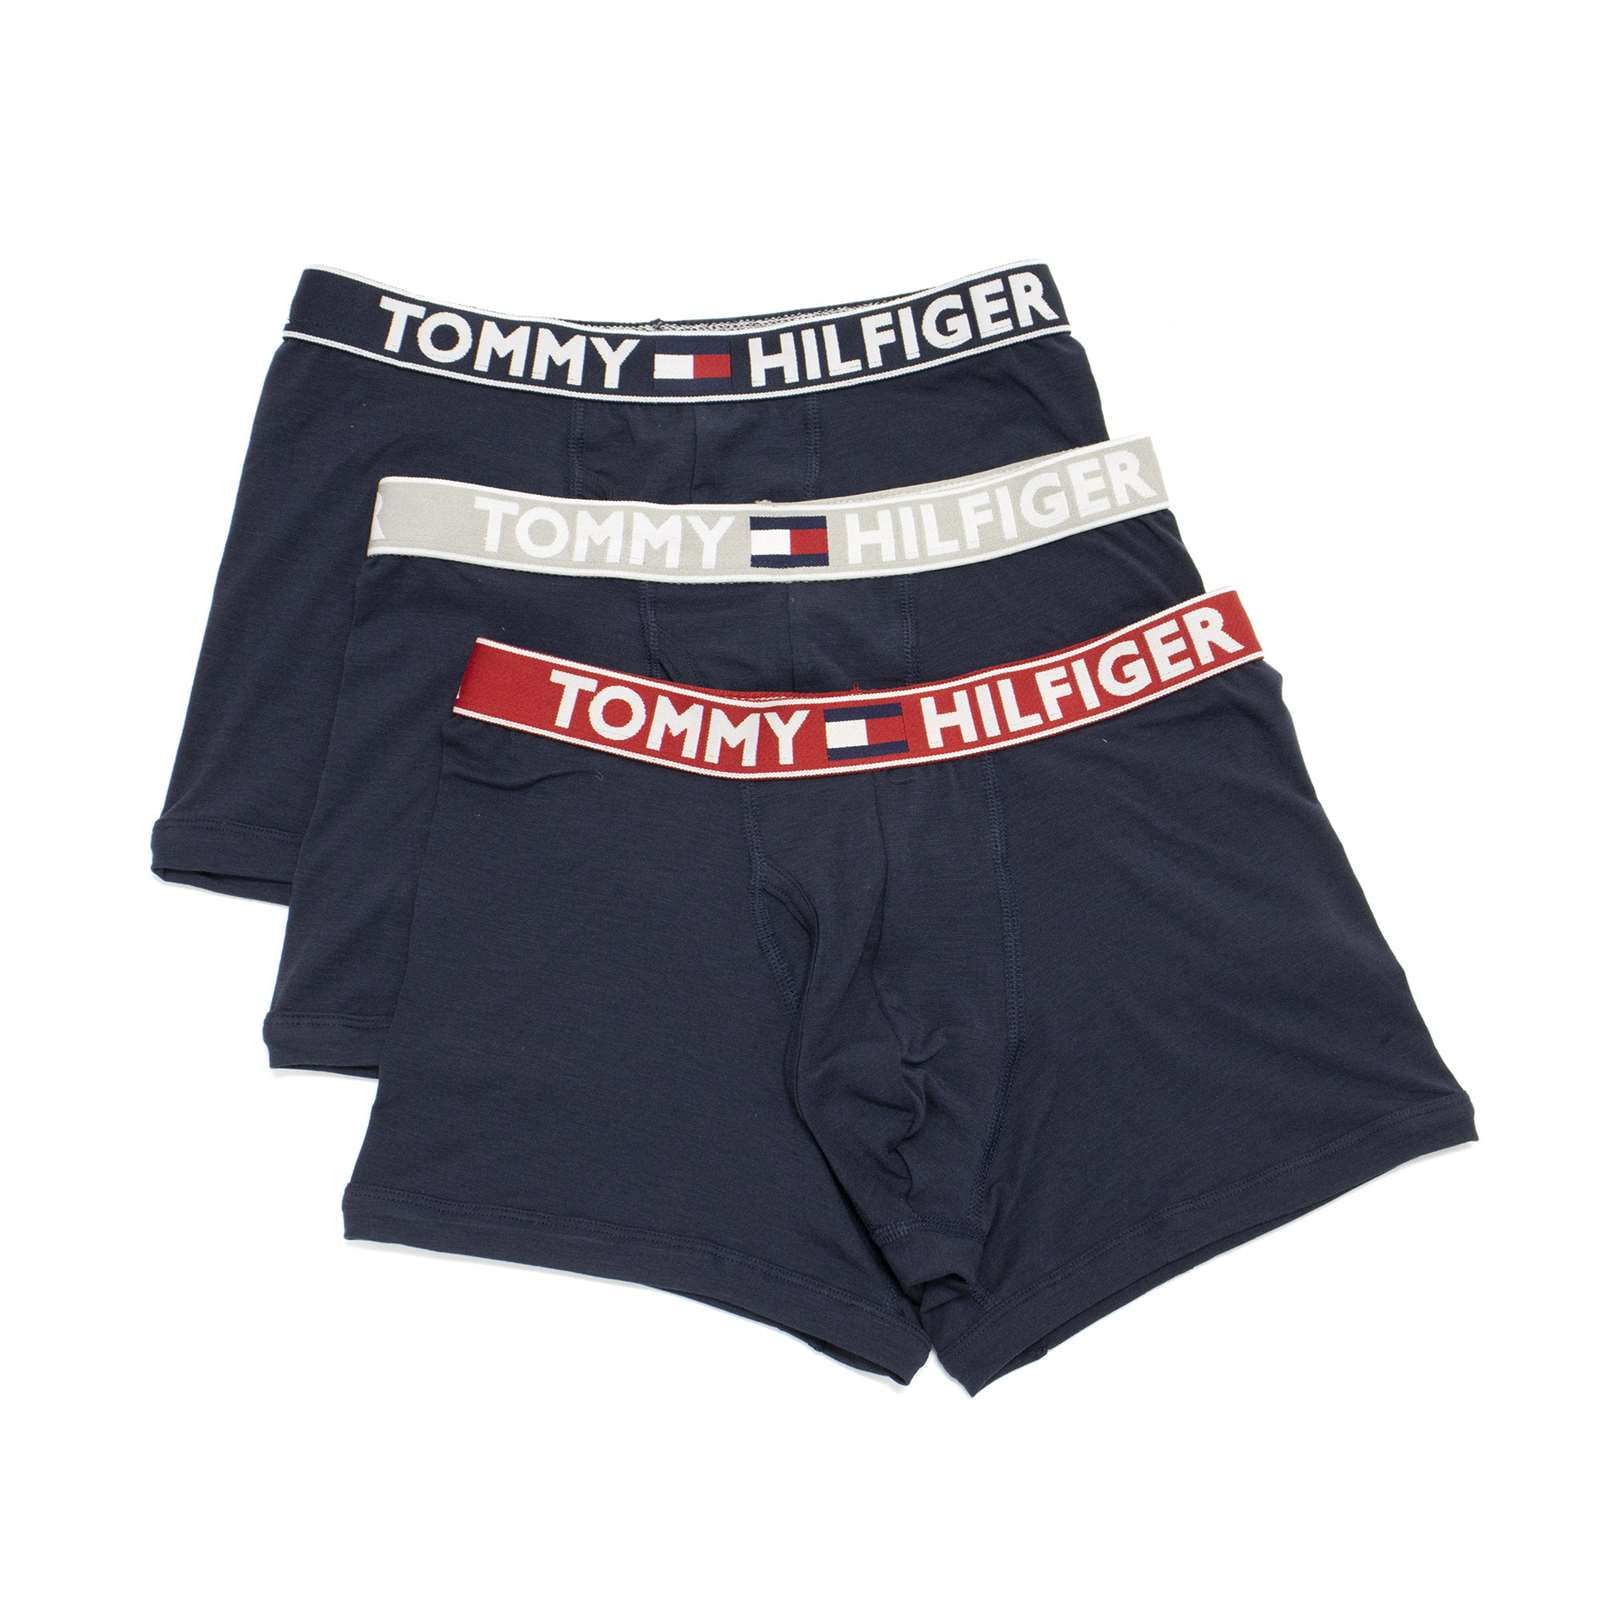 Buy Tommy Hilfiger Men's Underwear Multipack Cotton Classics Trunks, Dark  Navy, Medium at